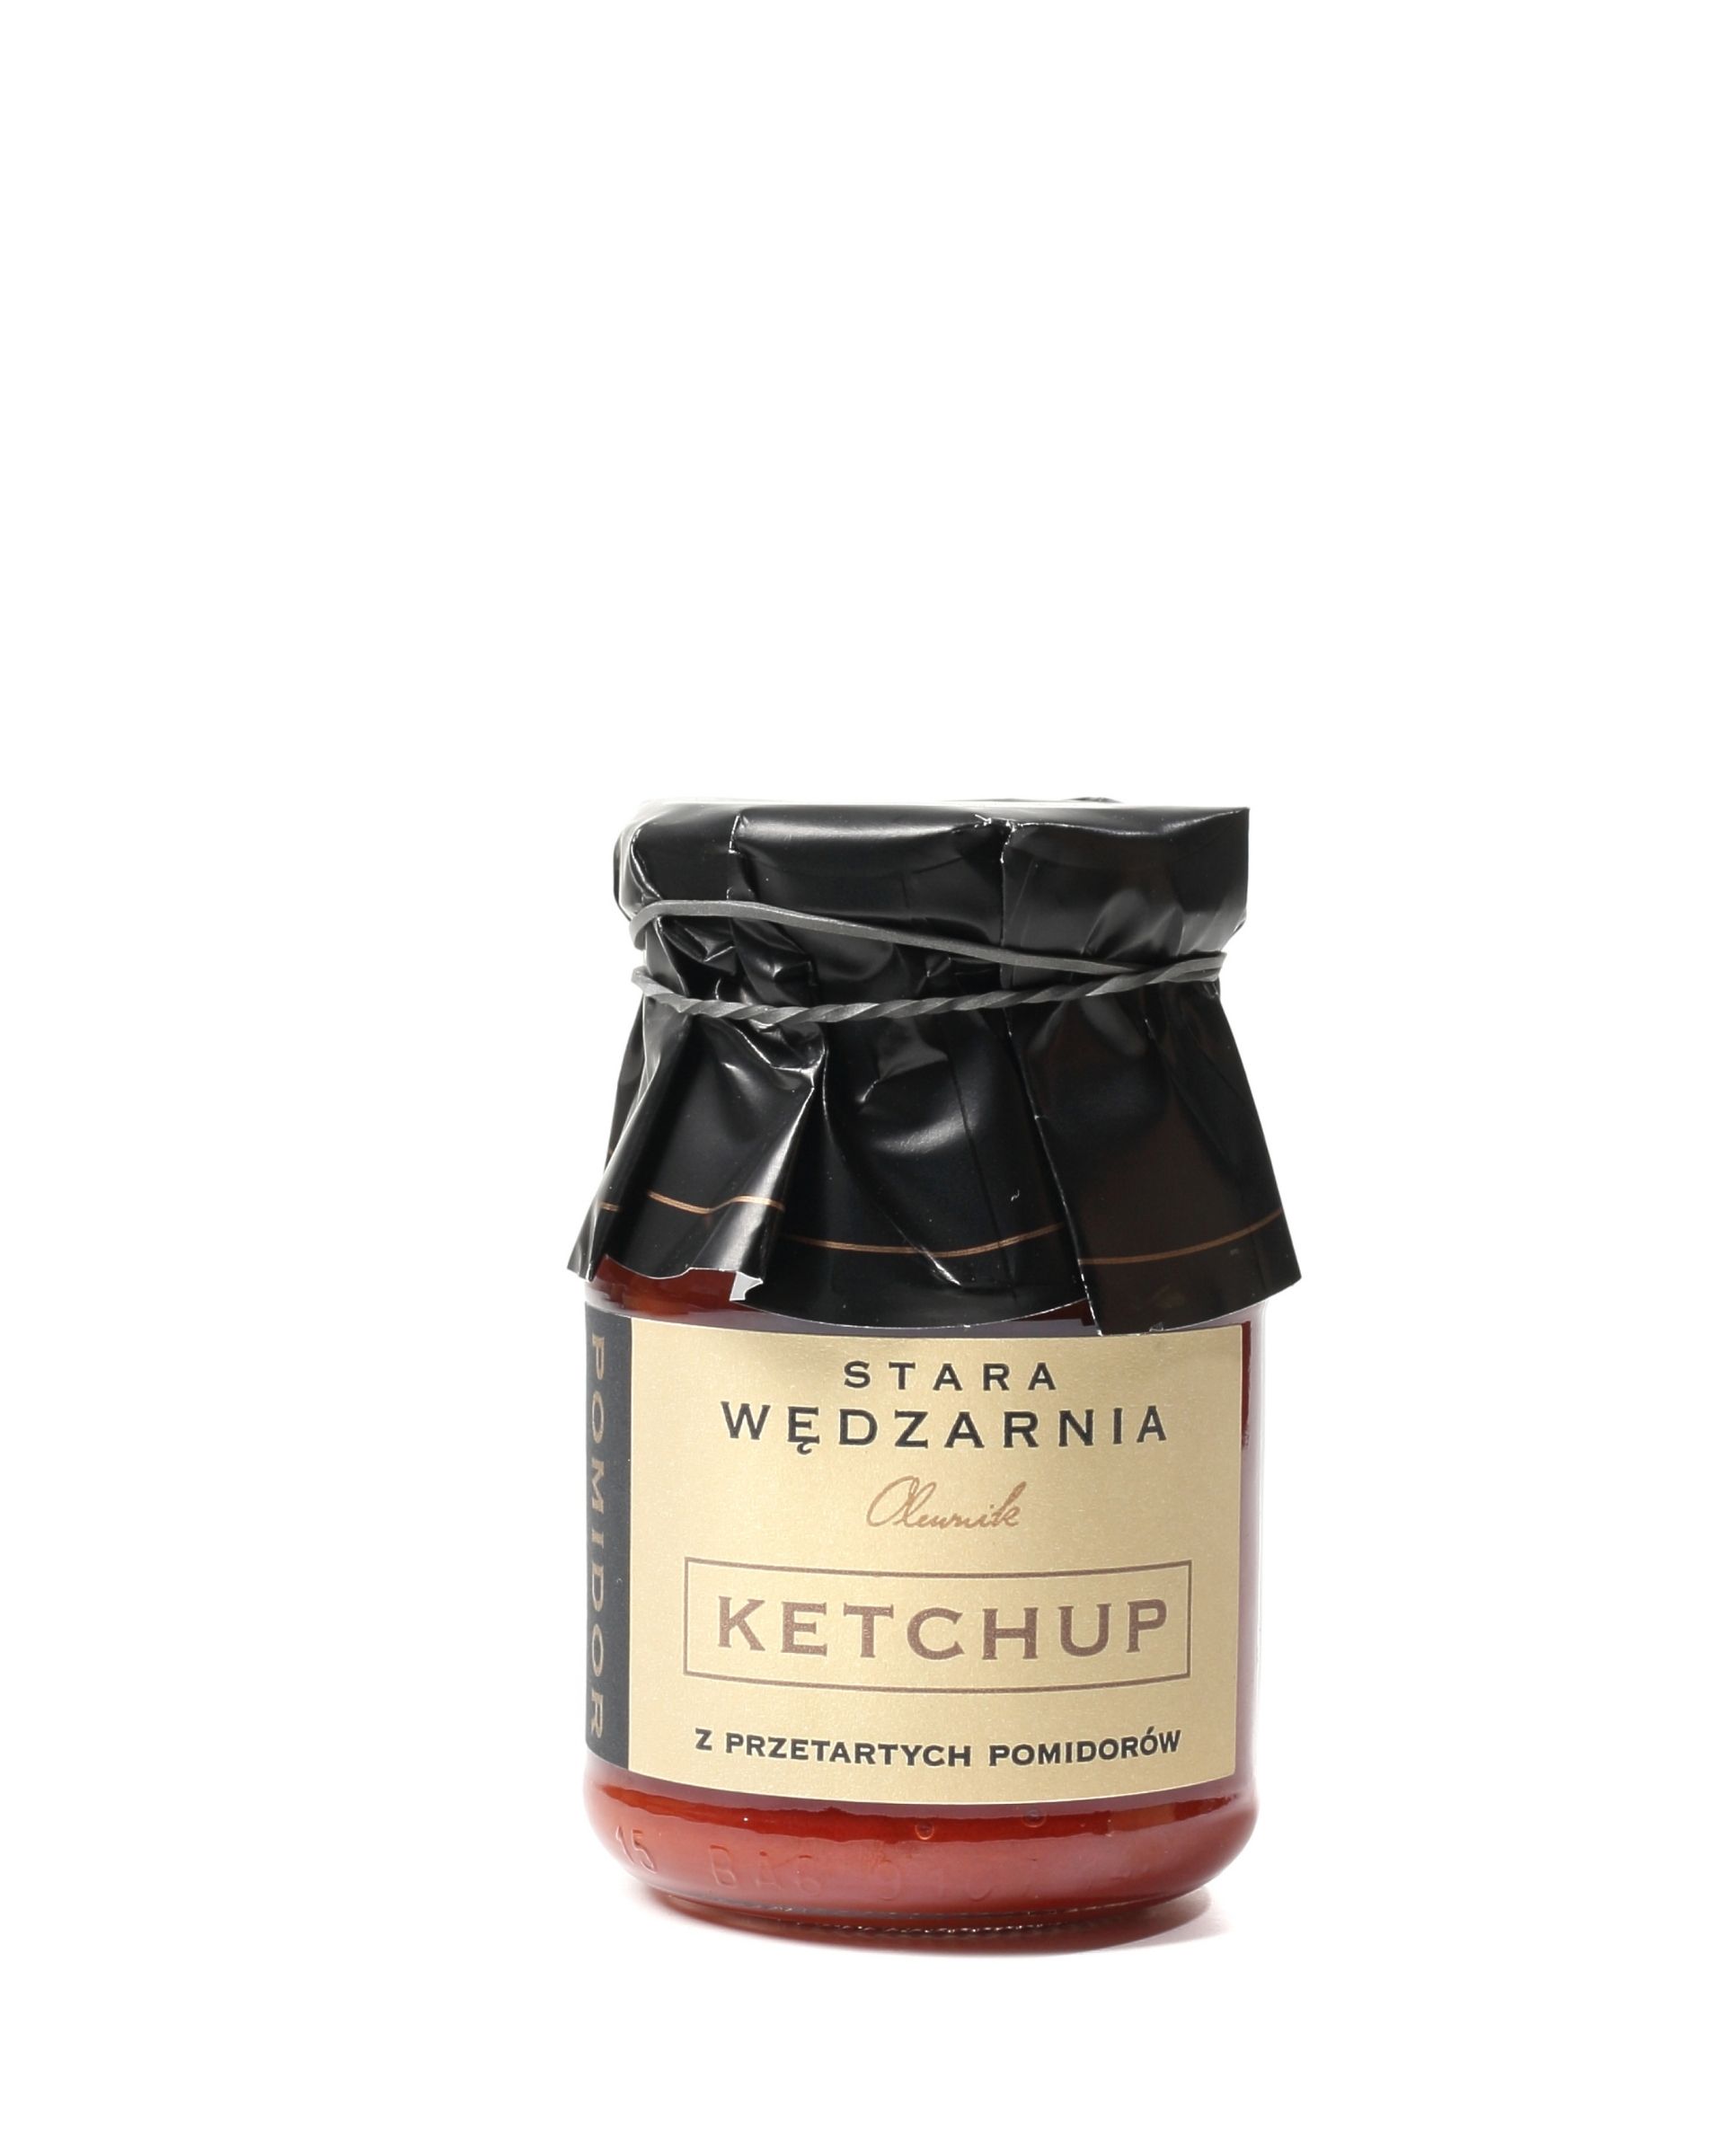 Naturalny ketchup przecierany Stara Wędzarnia